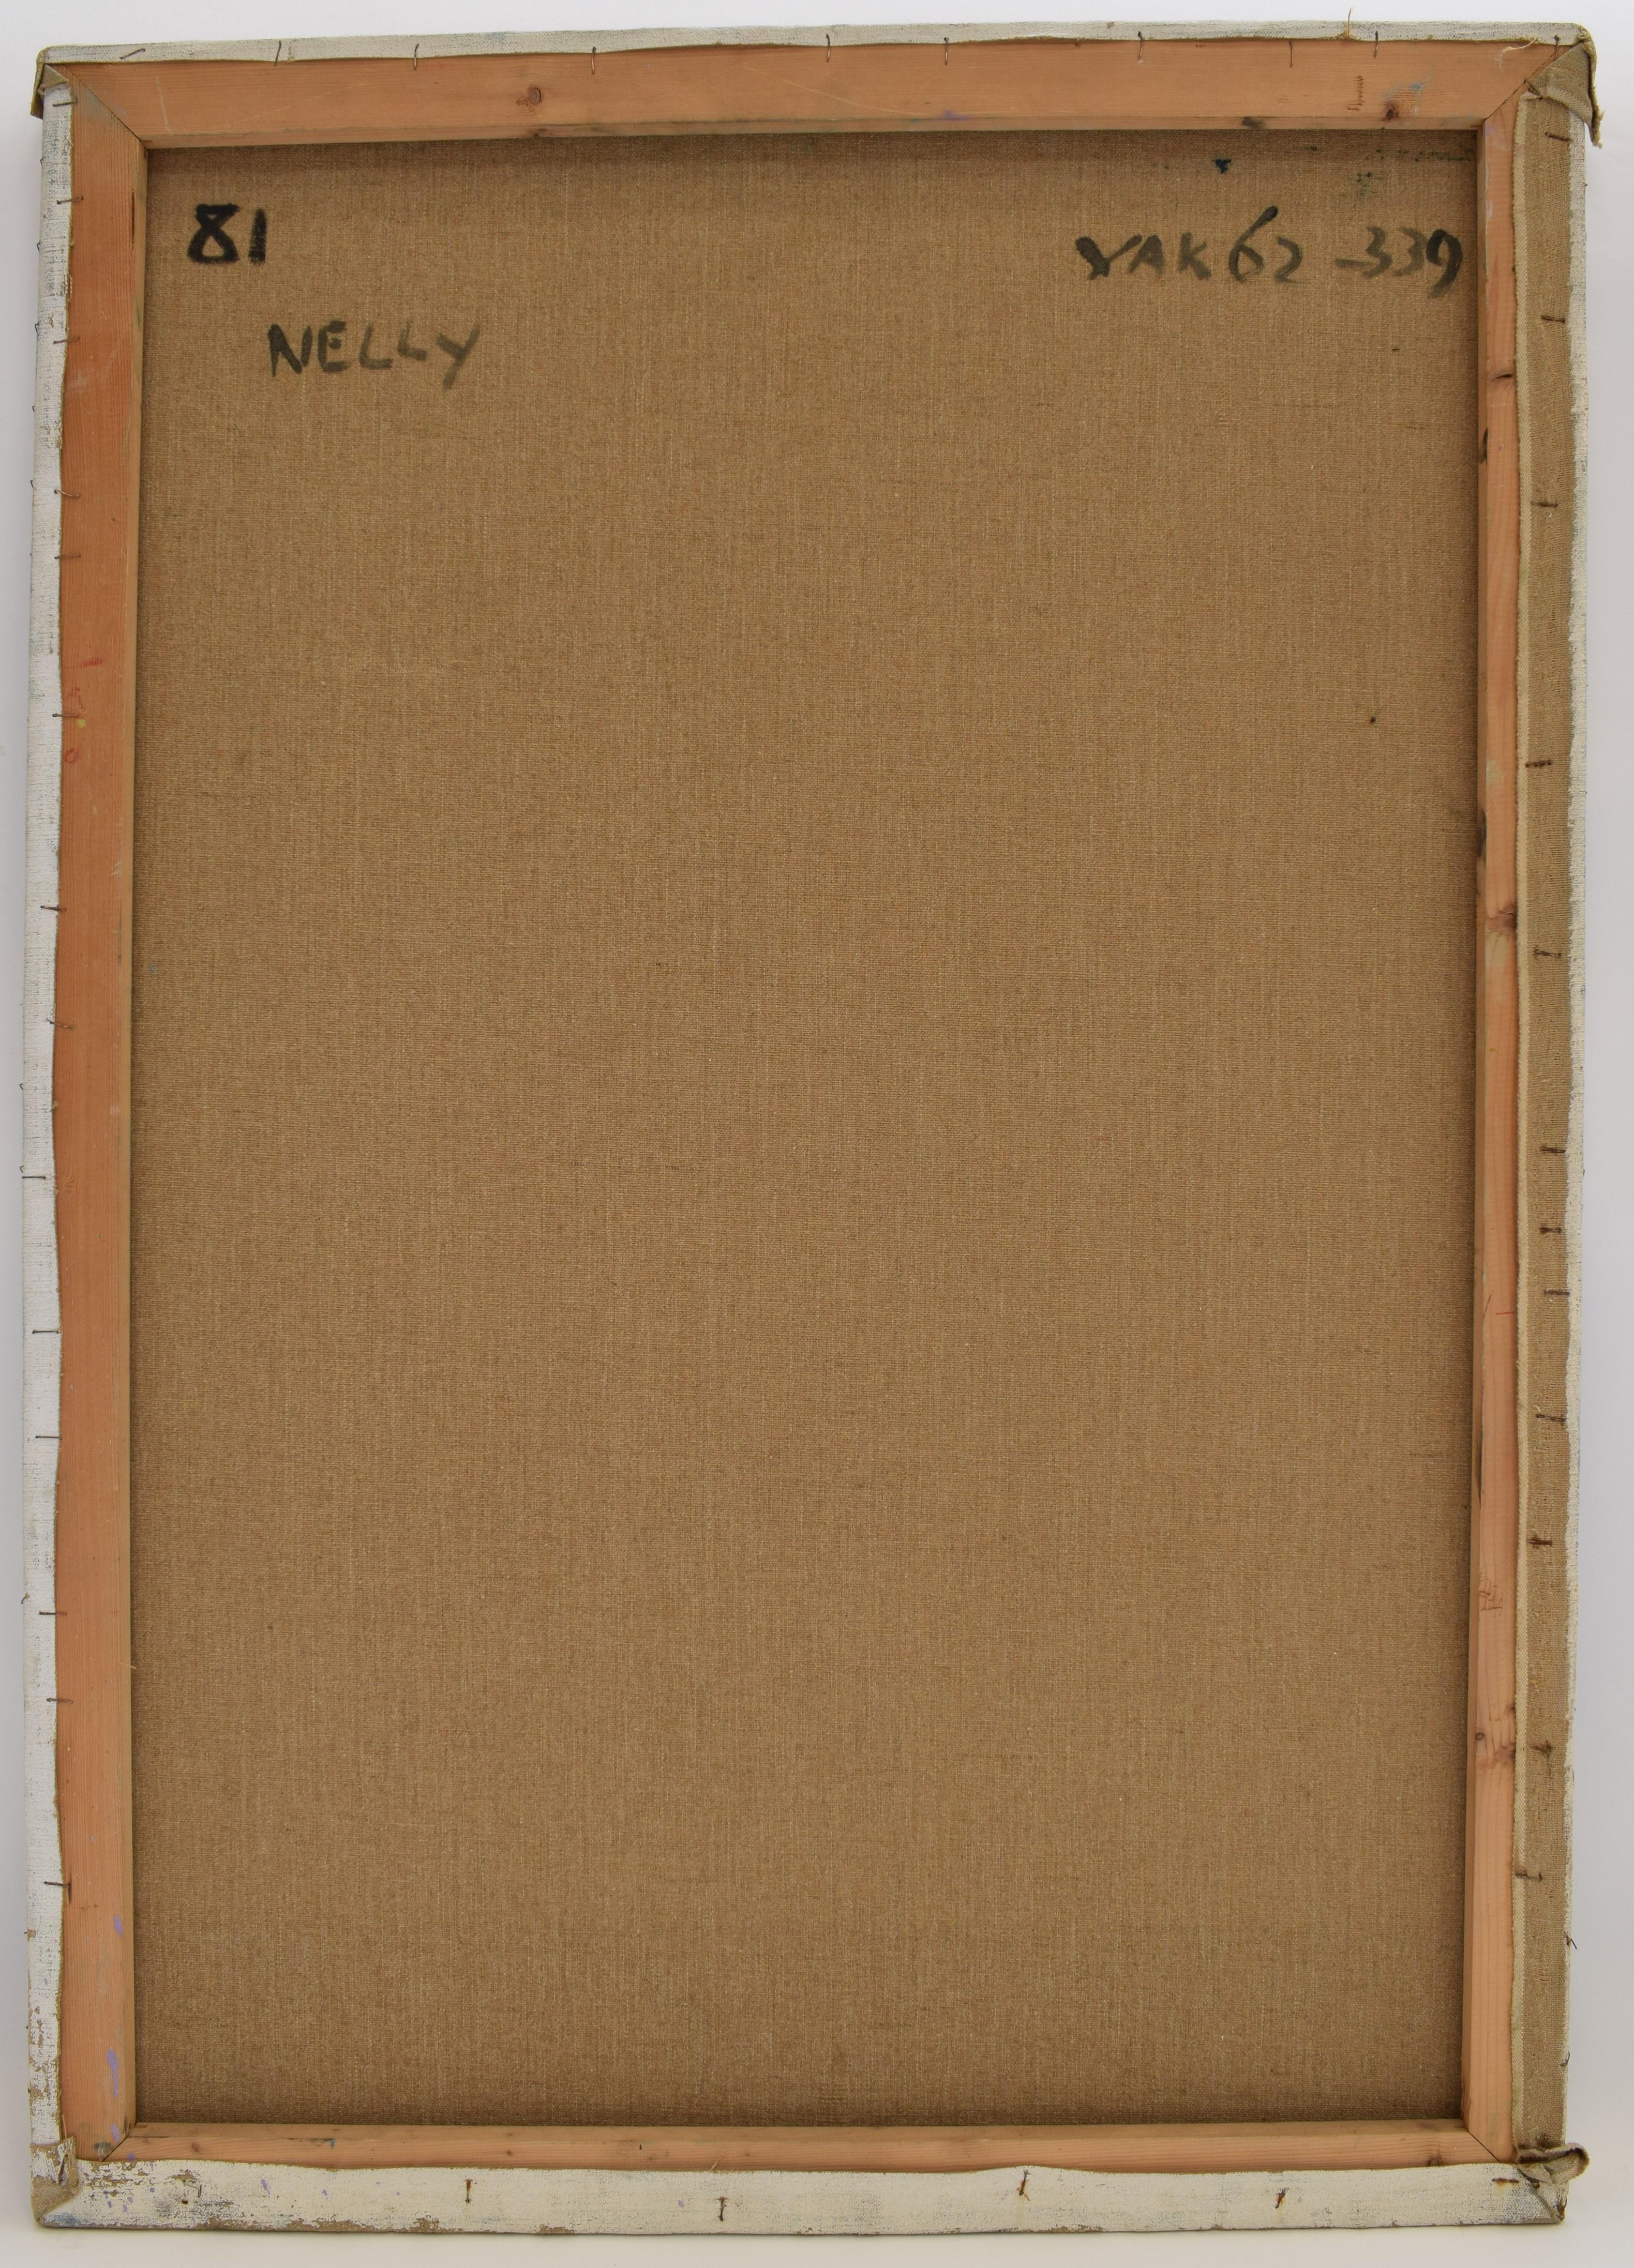 Nelly - Oil Paint on Canvas, Fauvist, Dutch Artist, Portrait, Painting For Sale 8